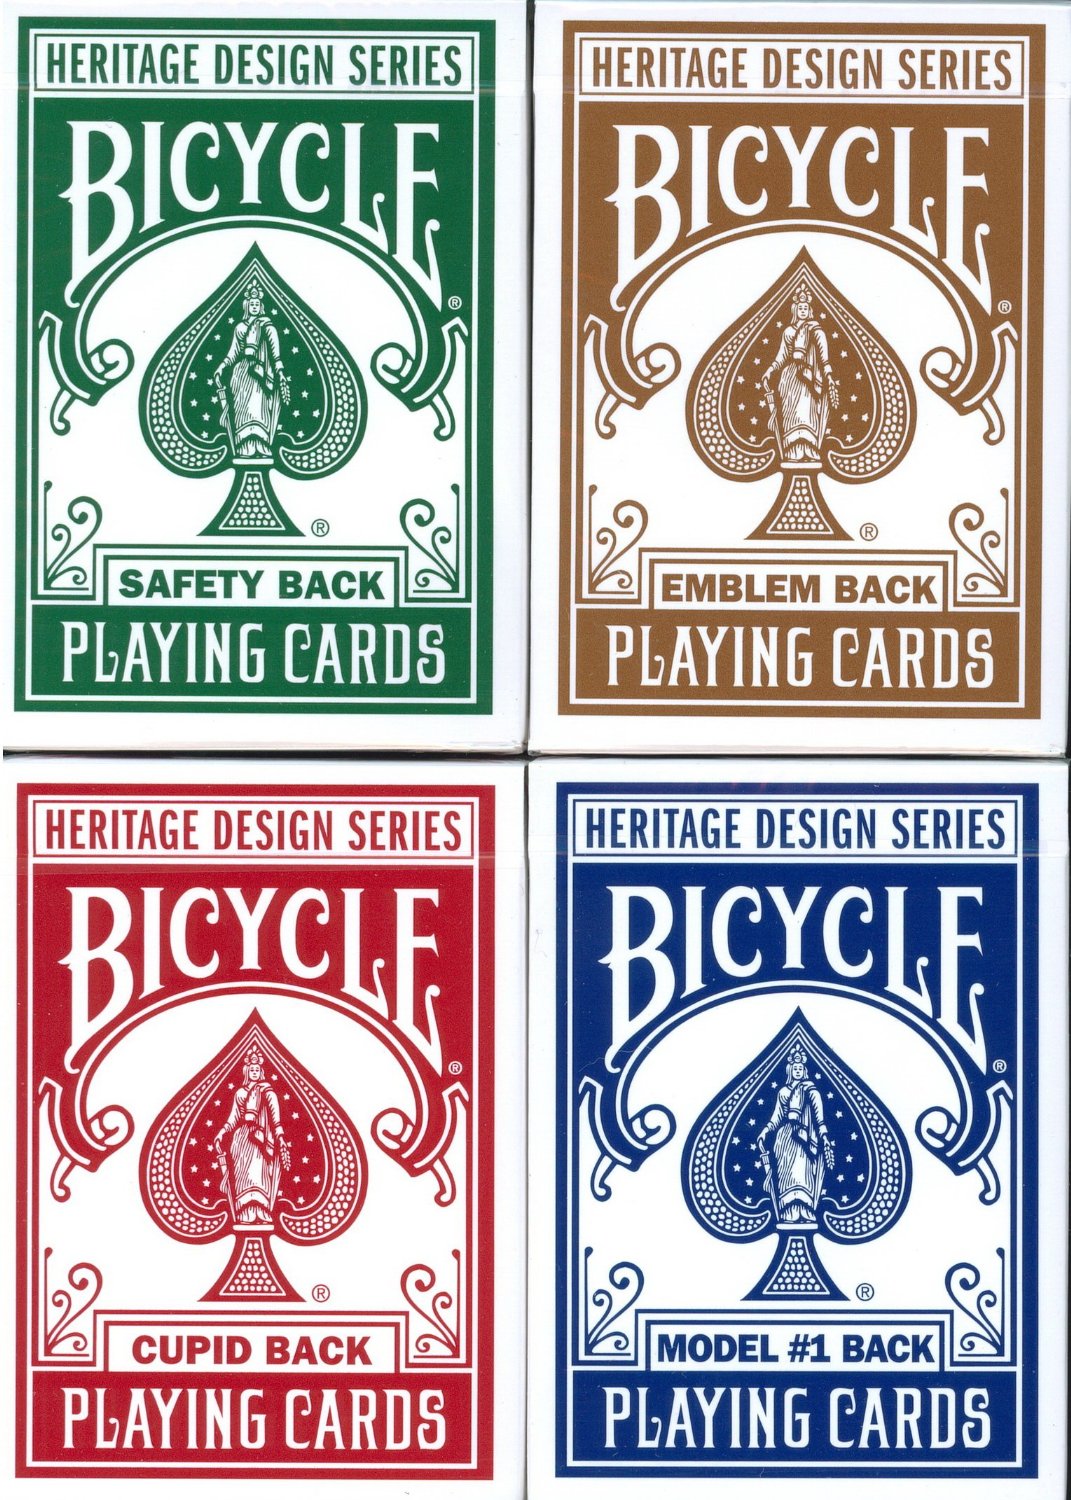 bicycle playing cards logo